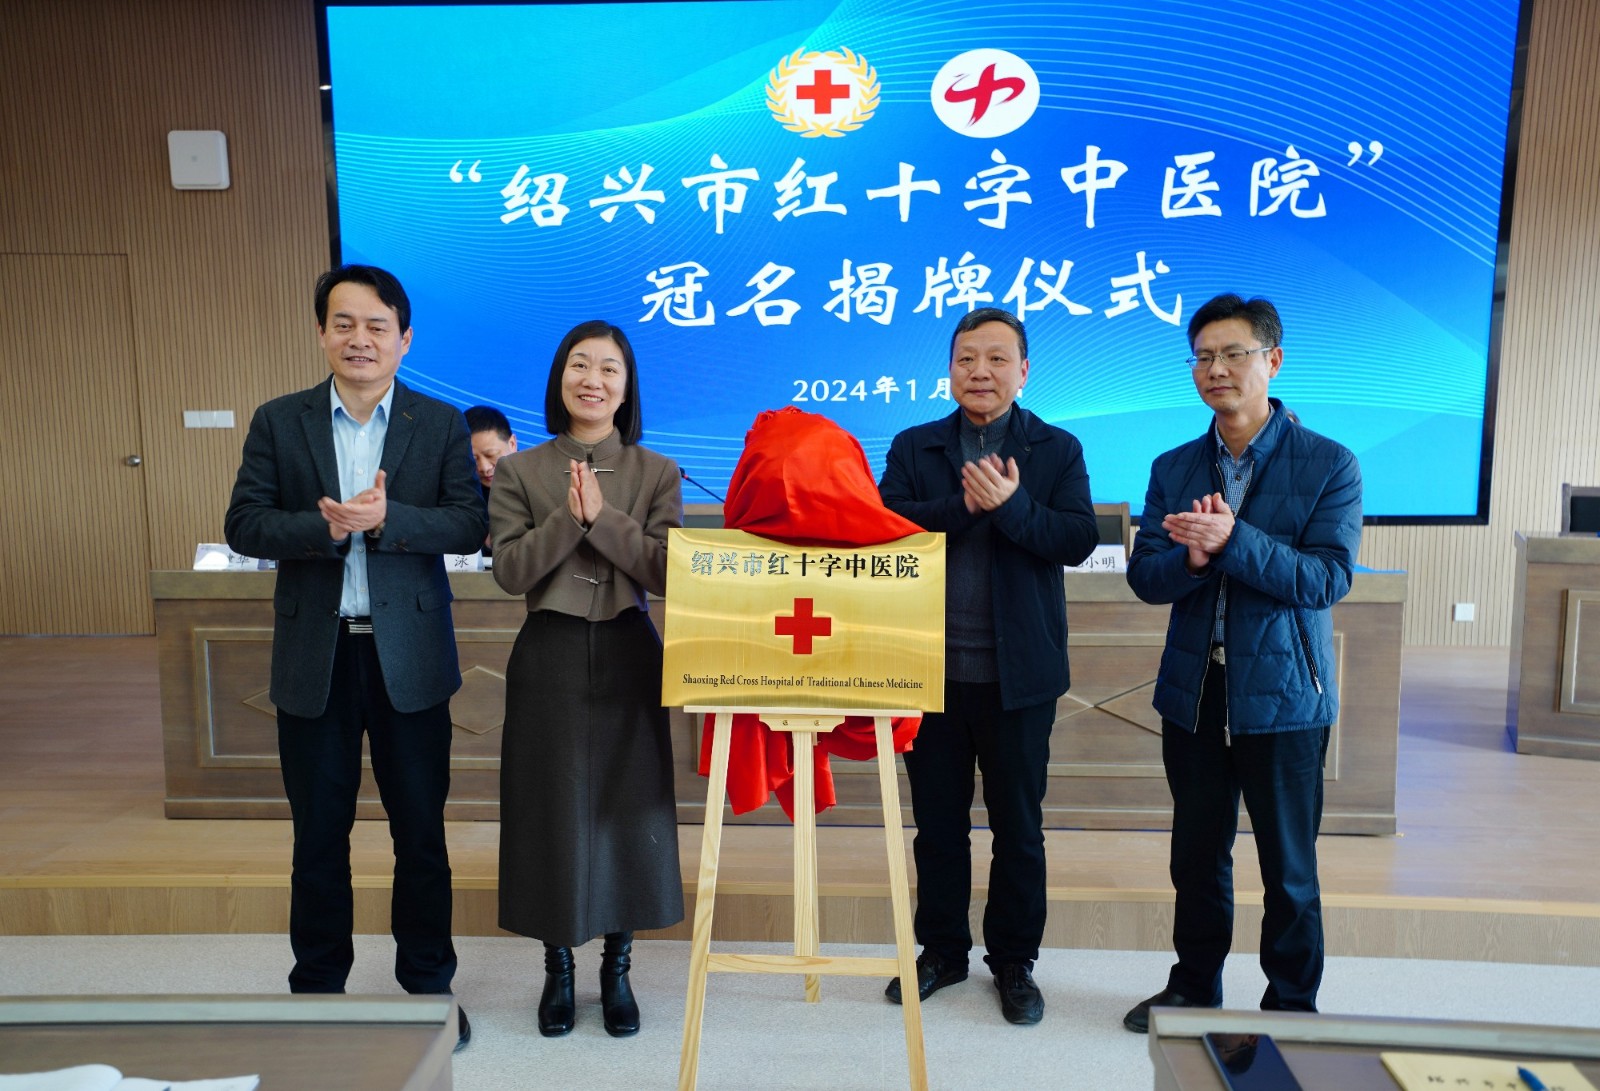 凝聚人道力量 共担健康使命——绍兴市首家冠名红十字医院正式揭